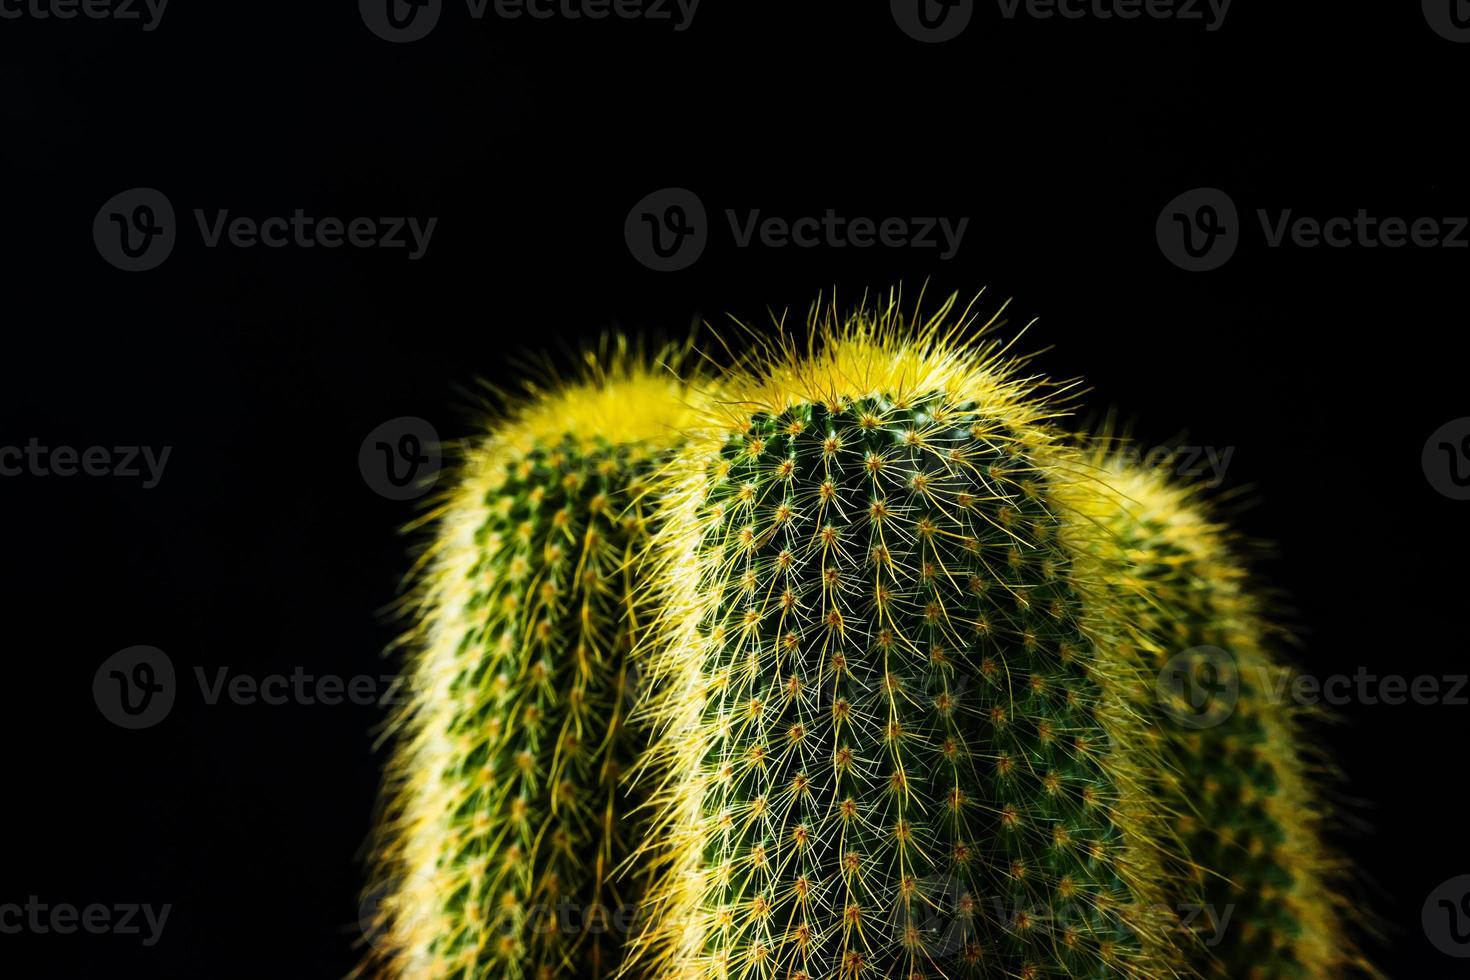 gros plan cactus sur fond noir photo